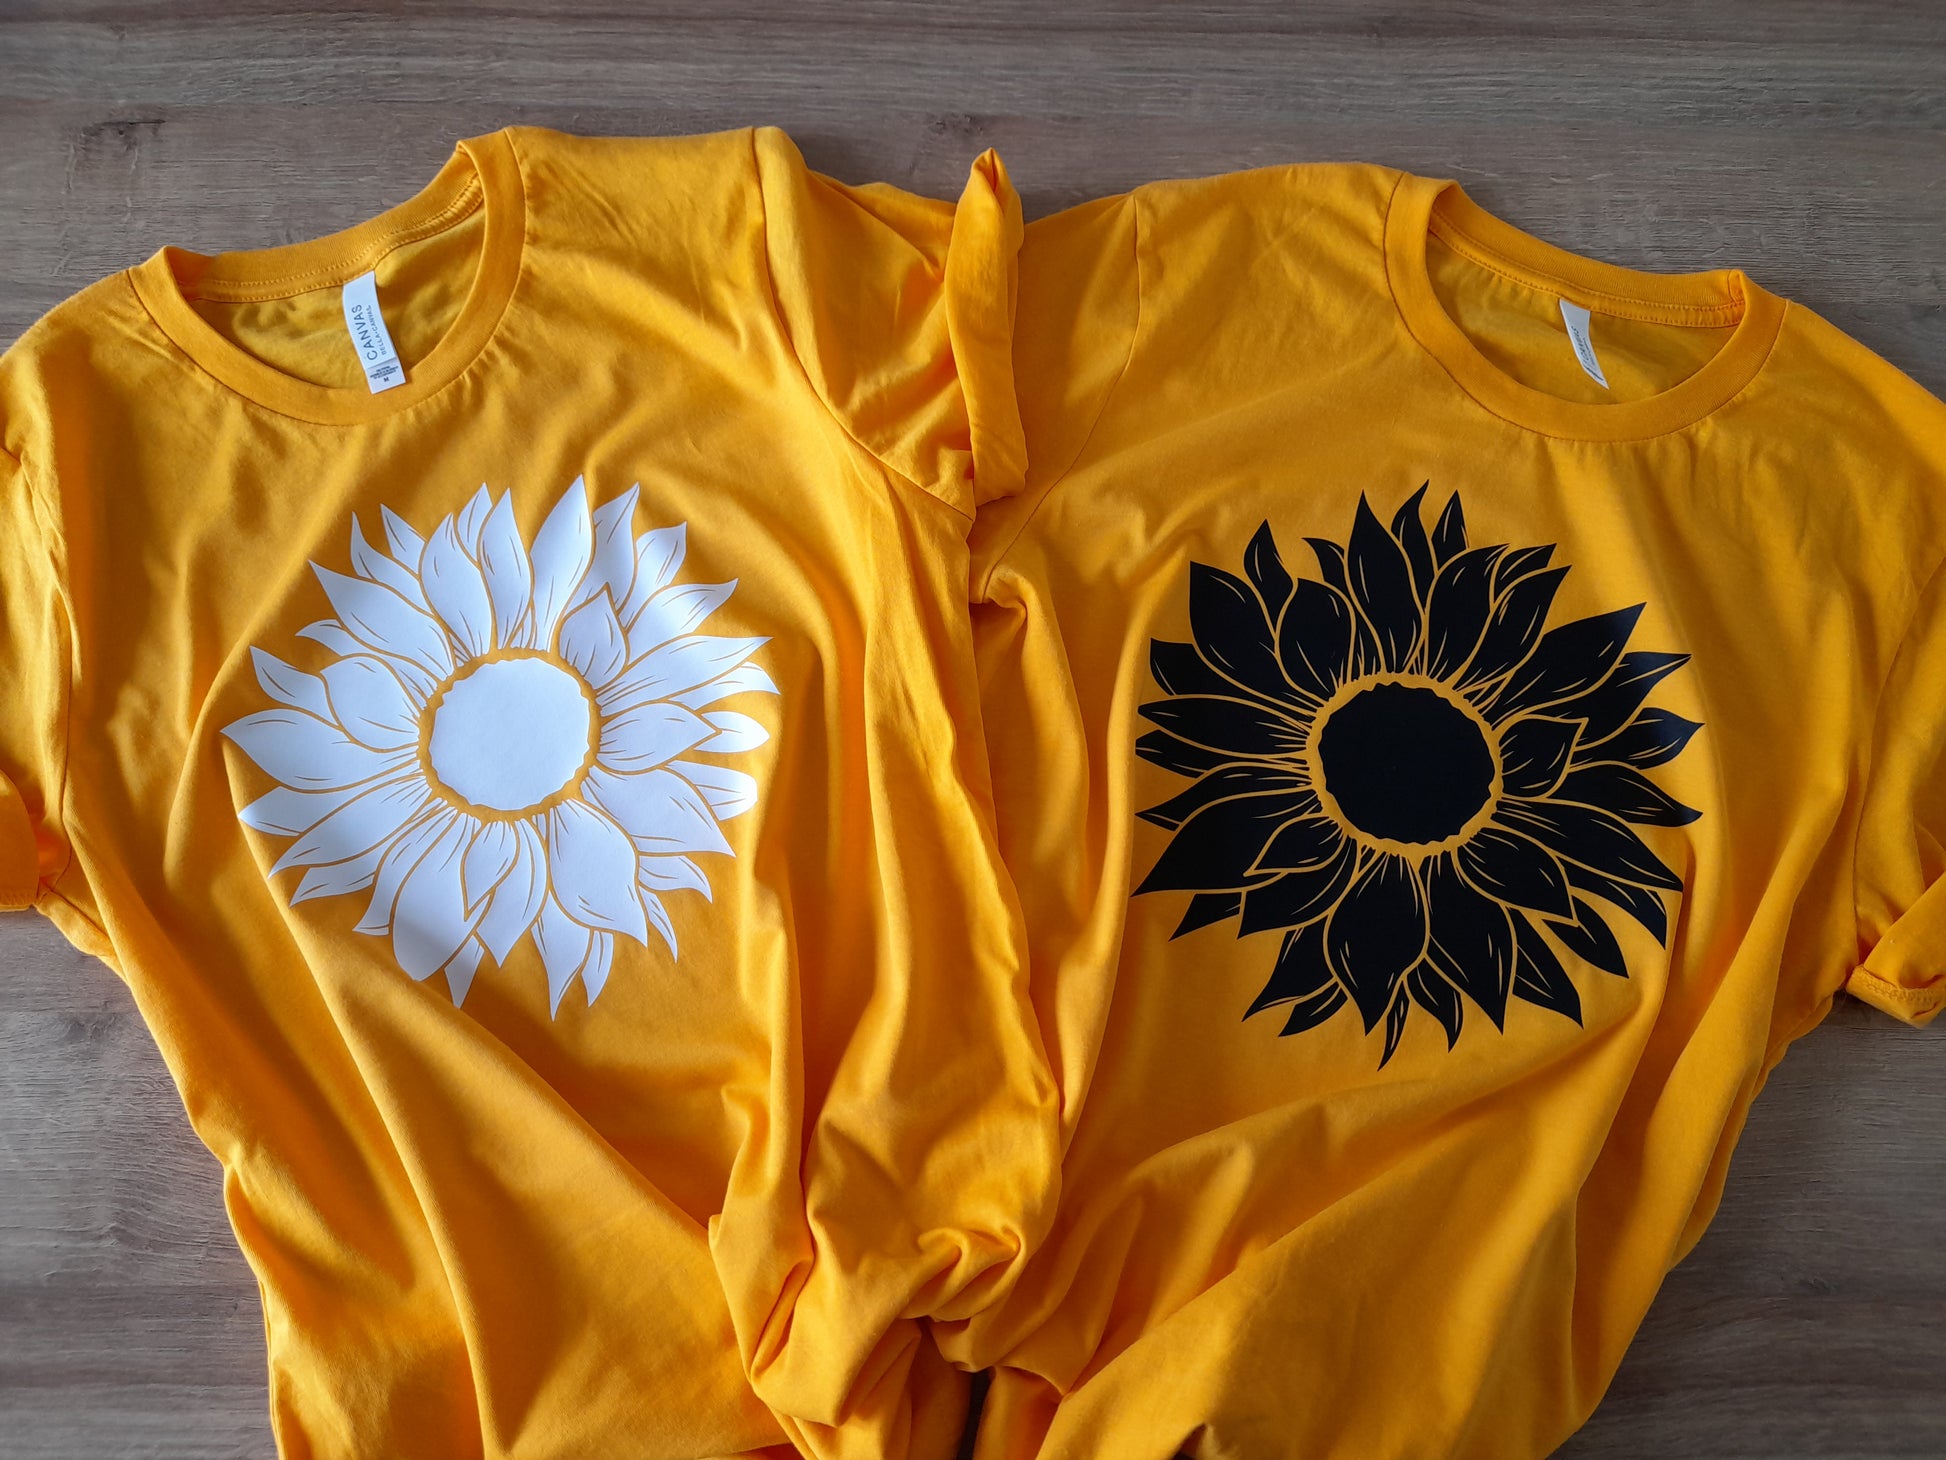 Sunflower yellow tshirt 